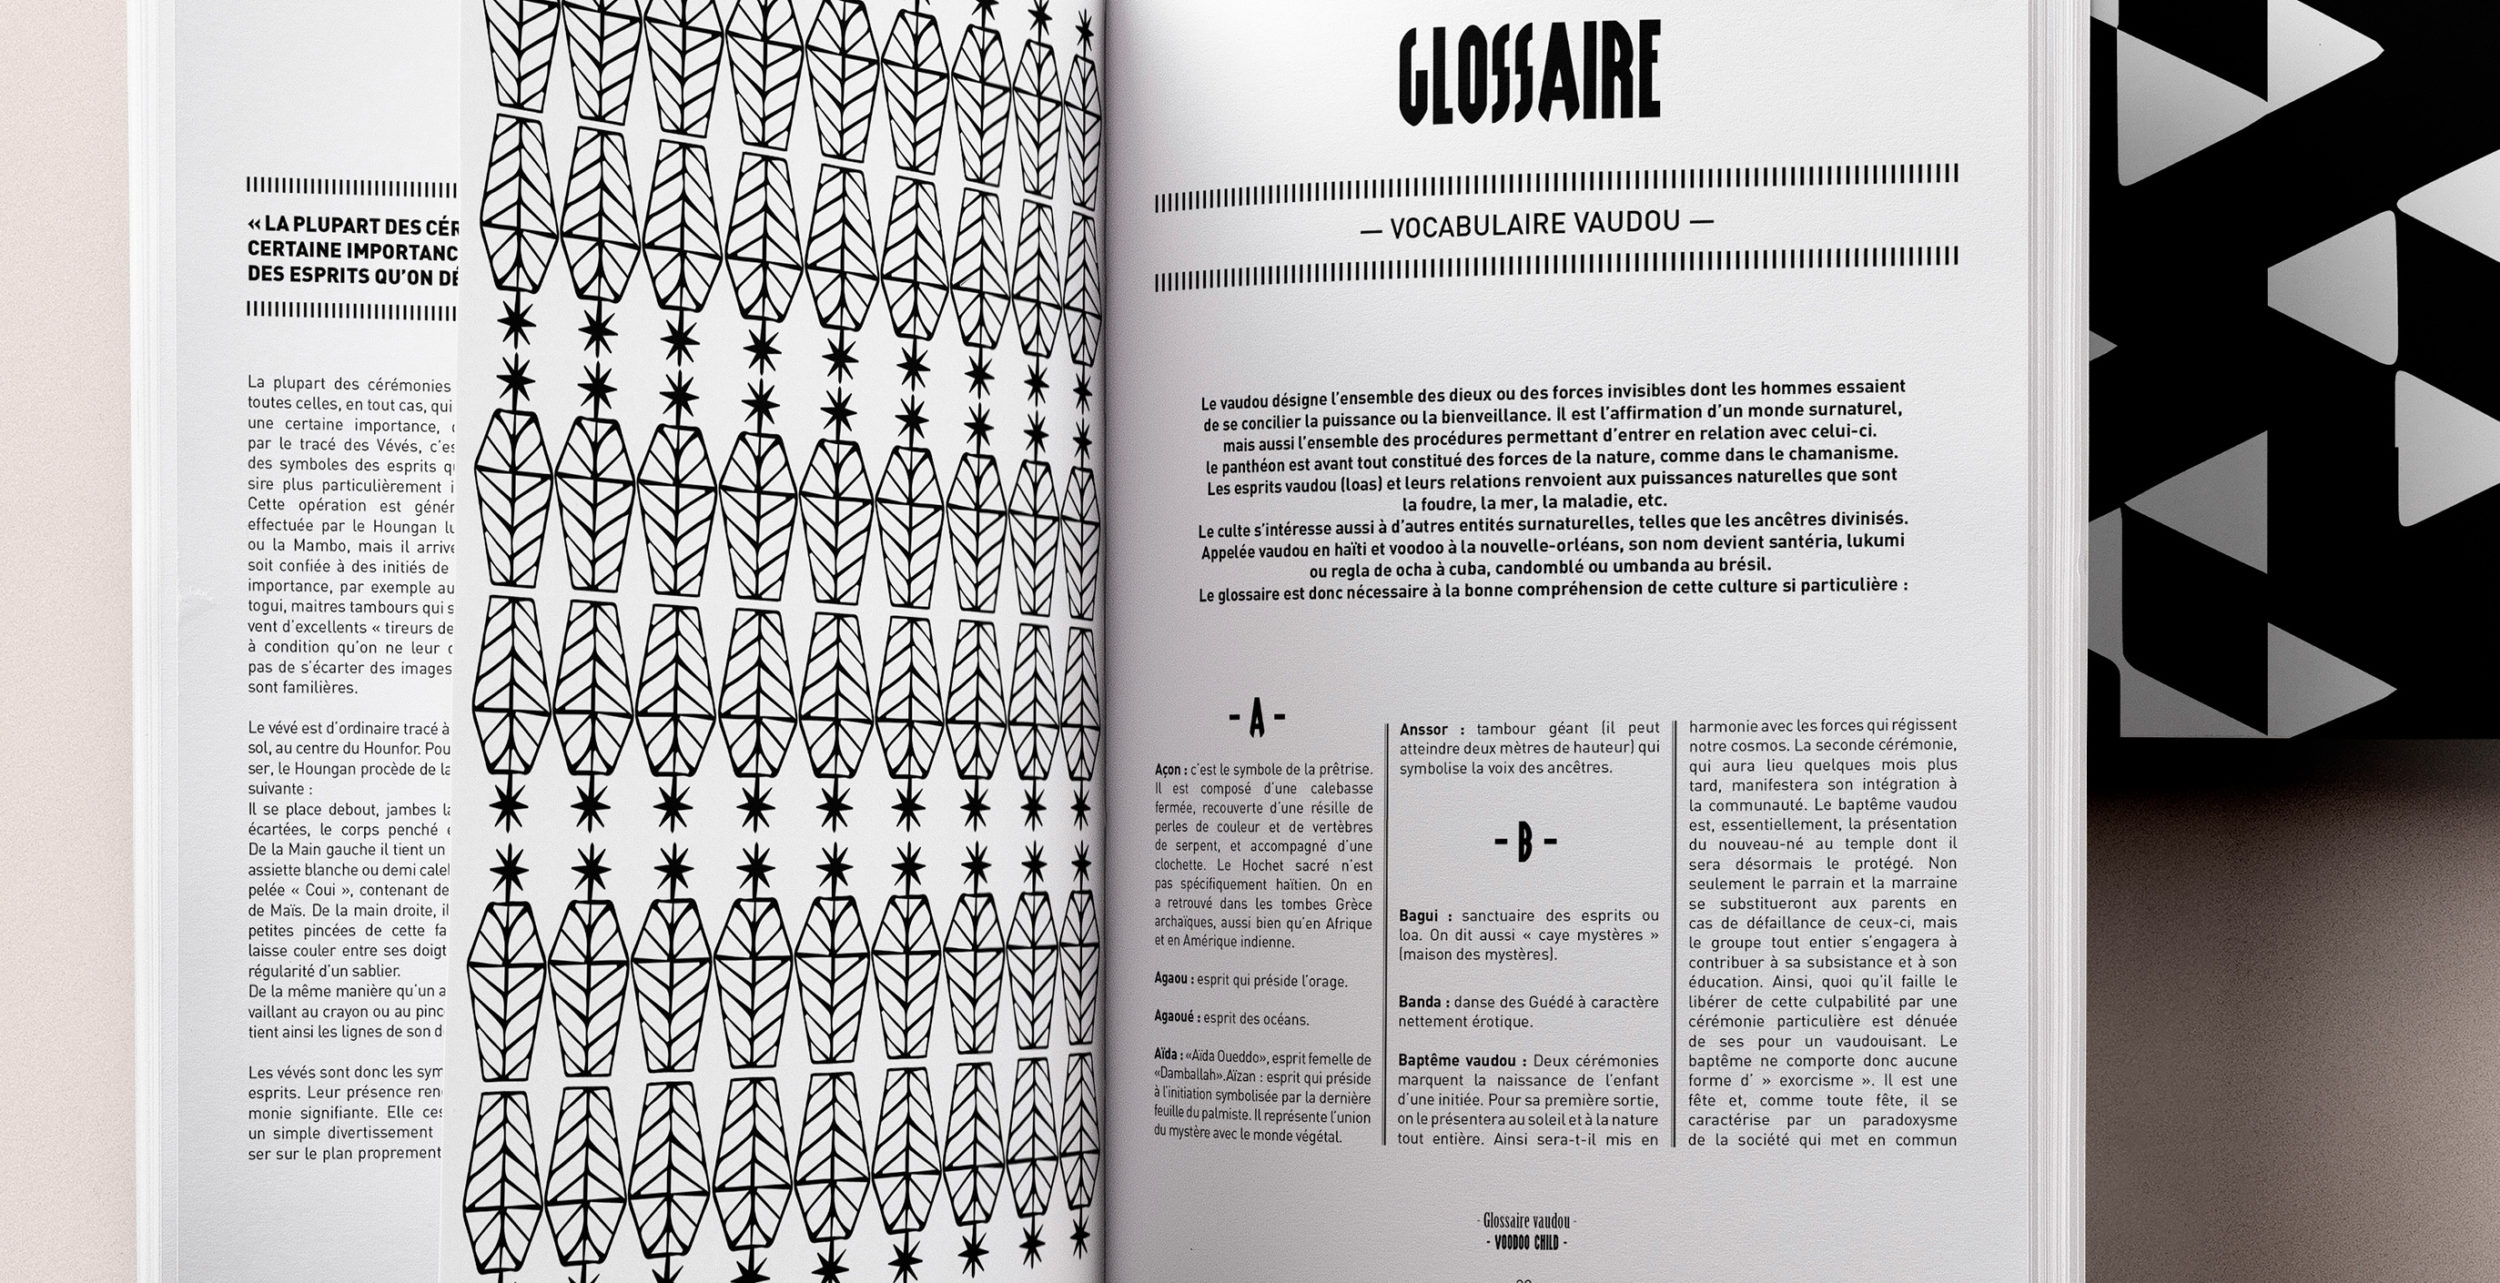 design éditorial mise en page glossaire magazine voodoo child - alles klar studio de design graphique lyon